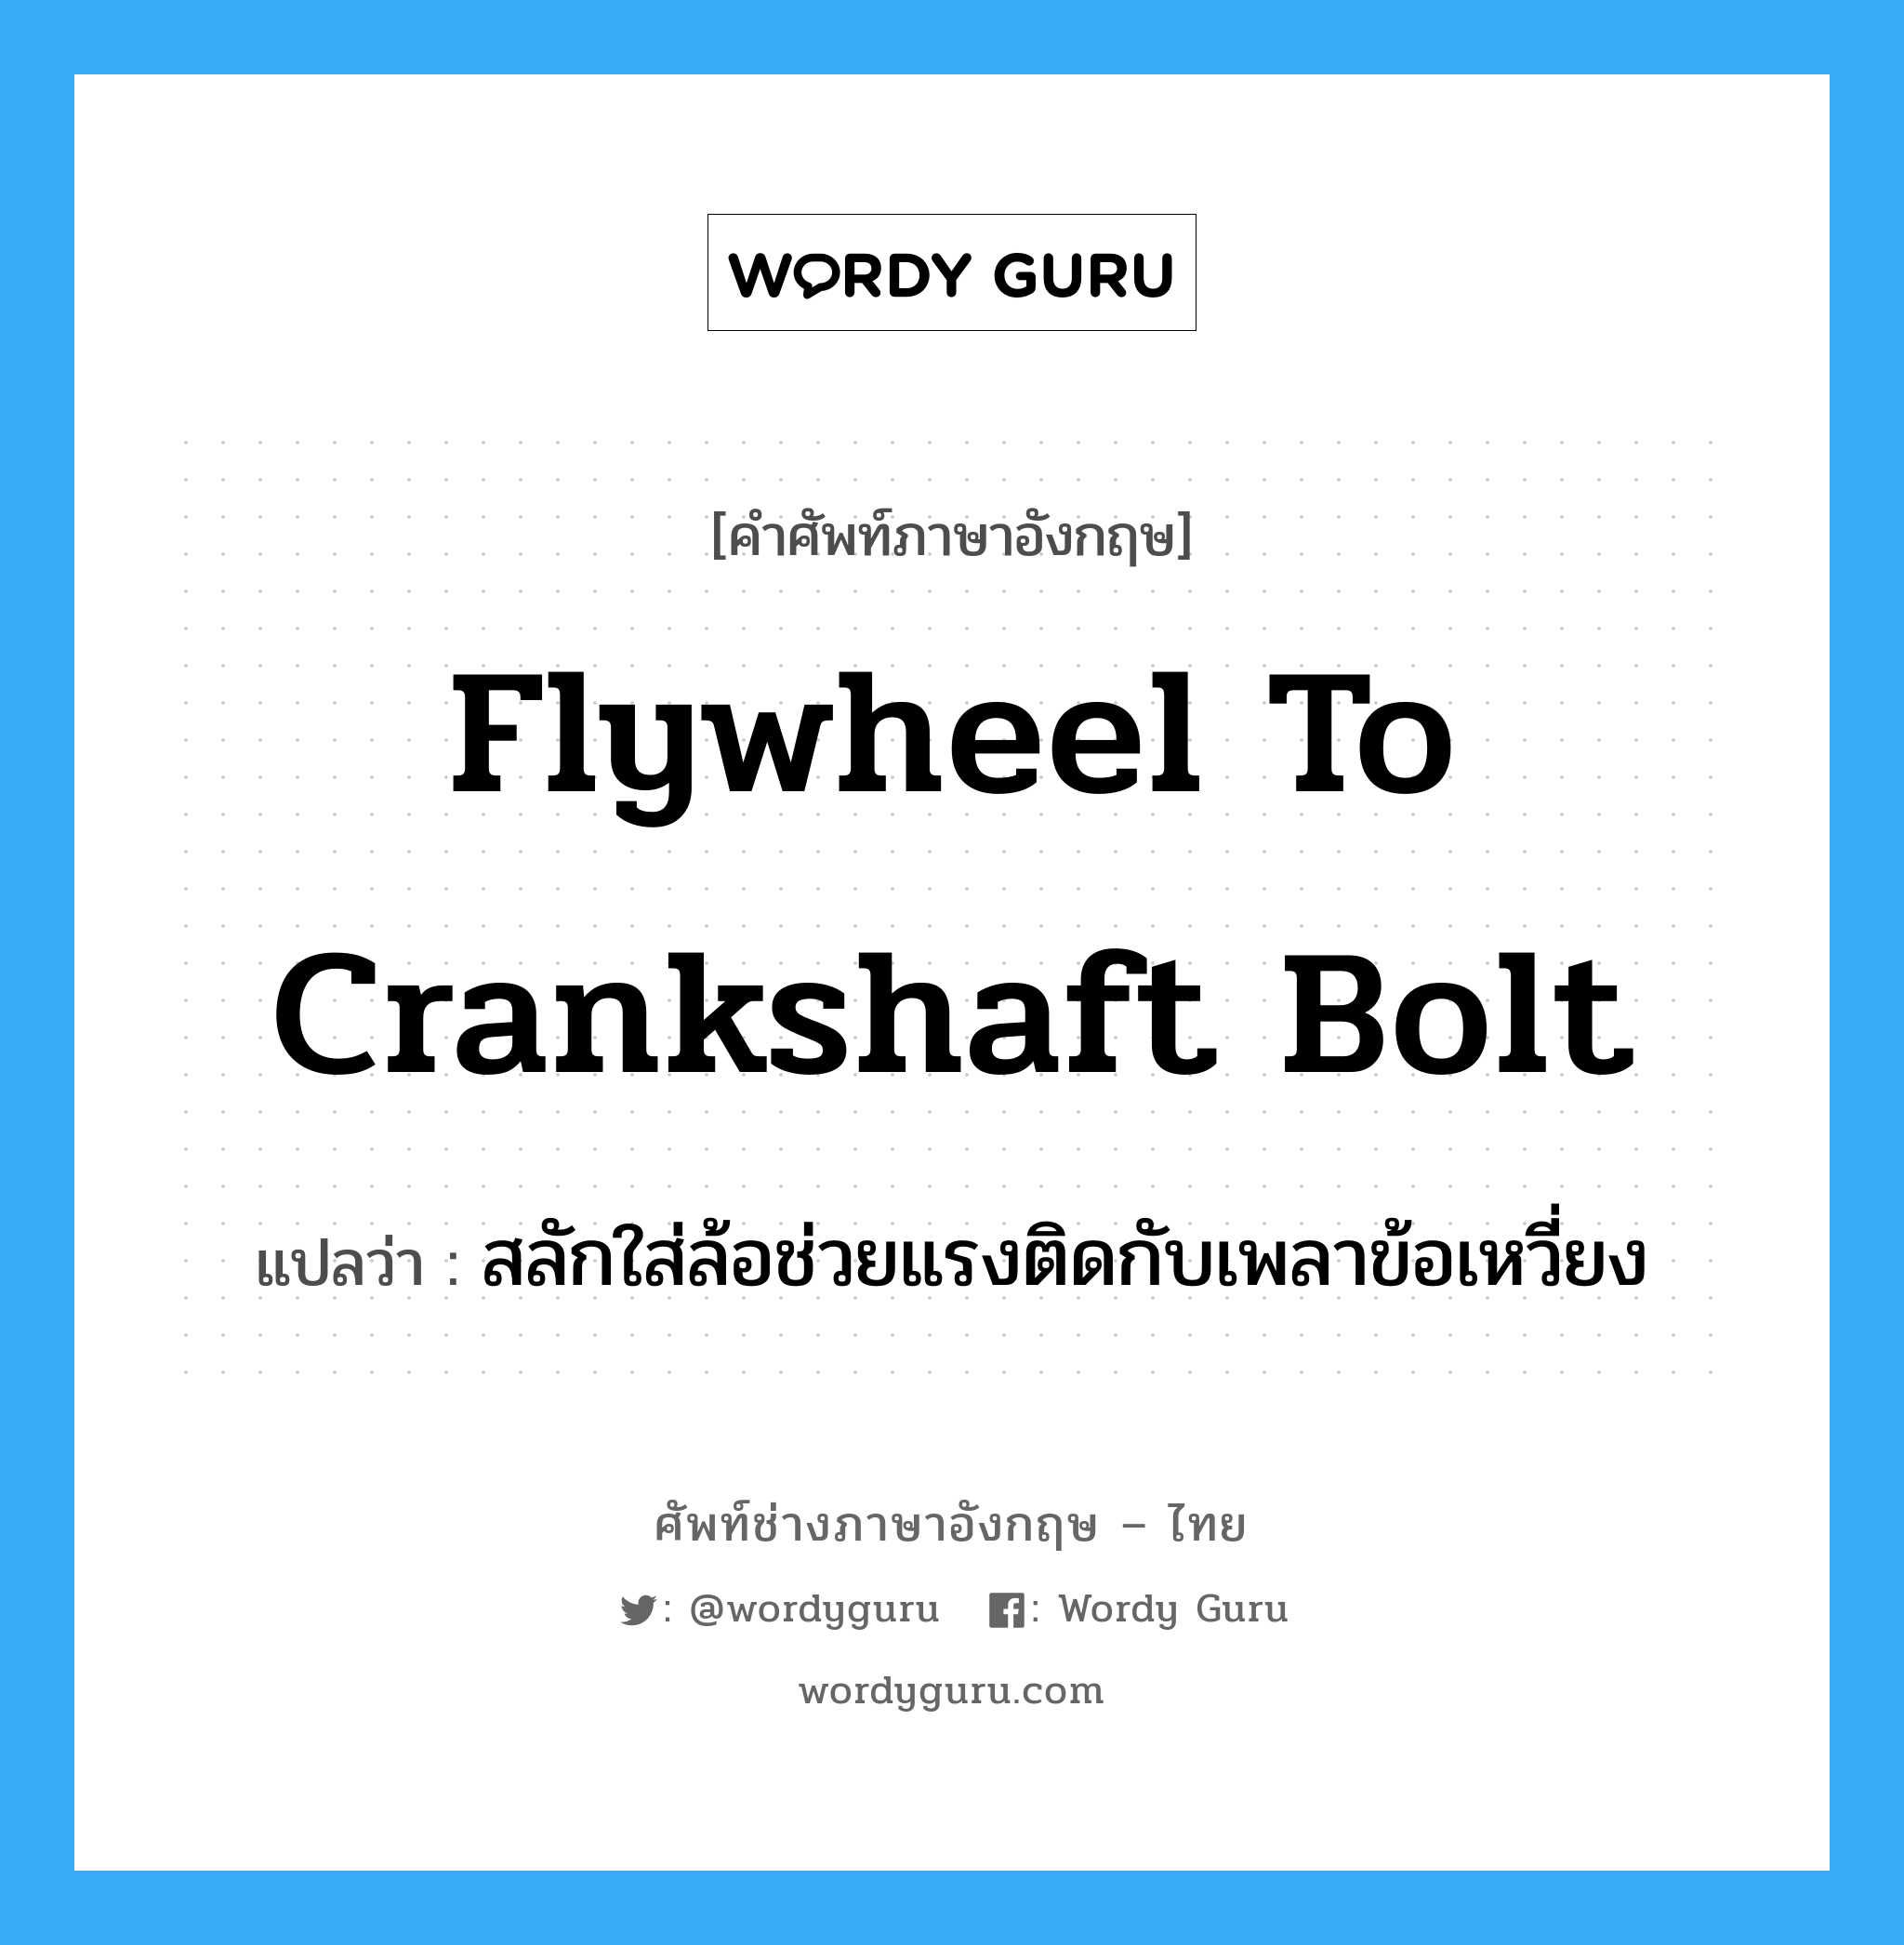 flywheel to crankshaft bolt แปลว่า?, คำศัพท์ช่างภาษาอังกฤษ - ไทย flywheel to crankshaft bolt คำศัพท์ภาษาอังกฤษ flywheel to crankshaft bolt แปลว่า สลักใส่ล้อช่วยแรงติดกับเพลาข้อเหวี่ยง